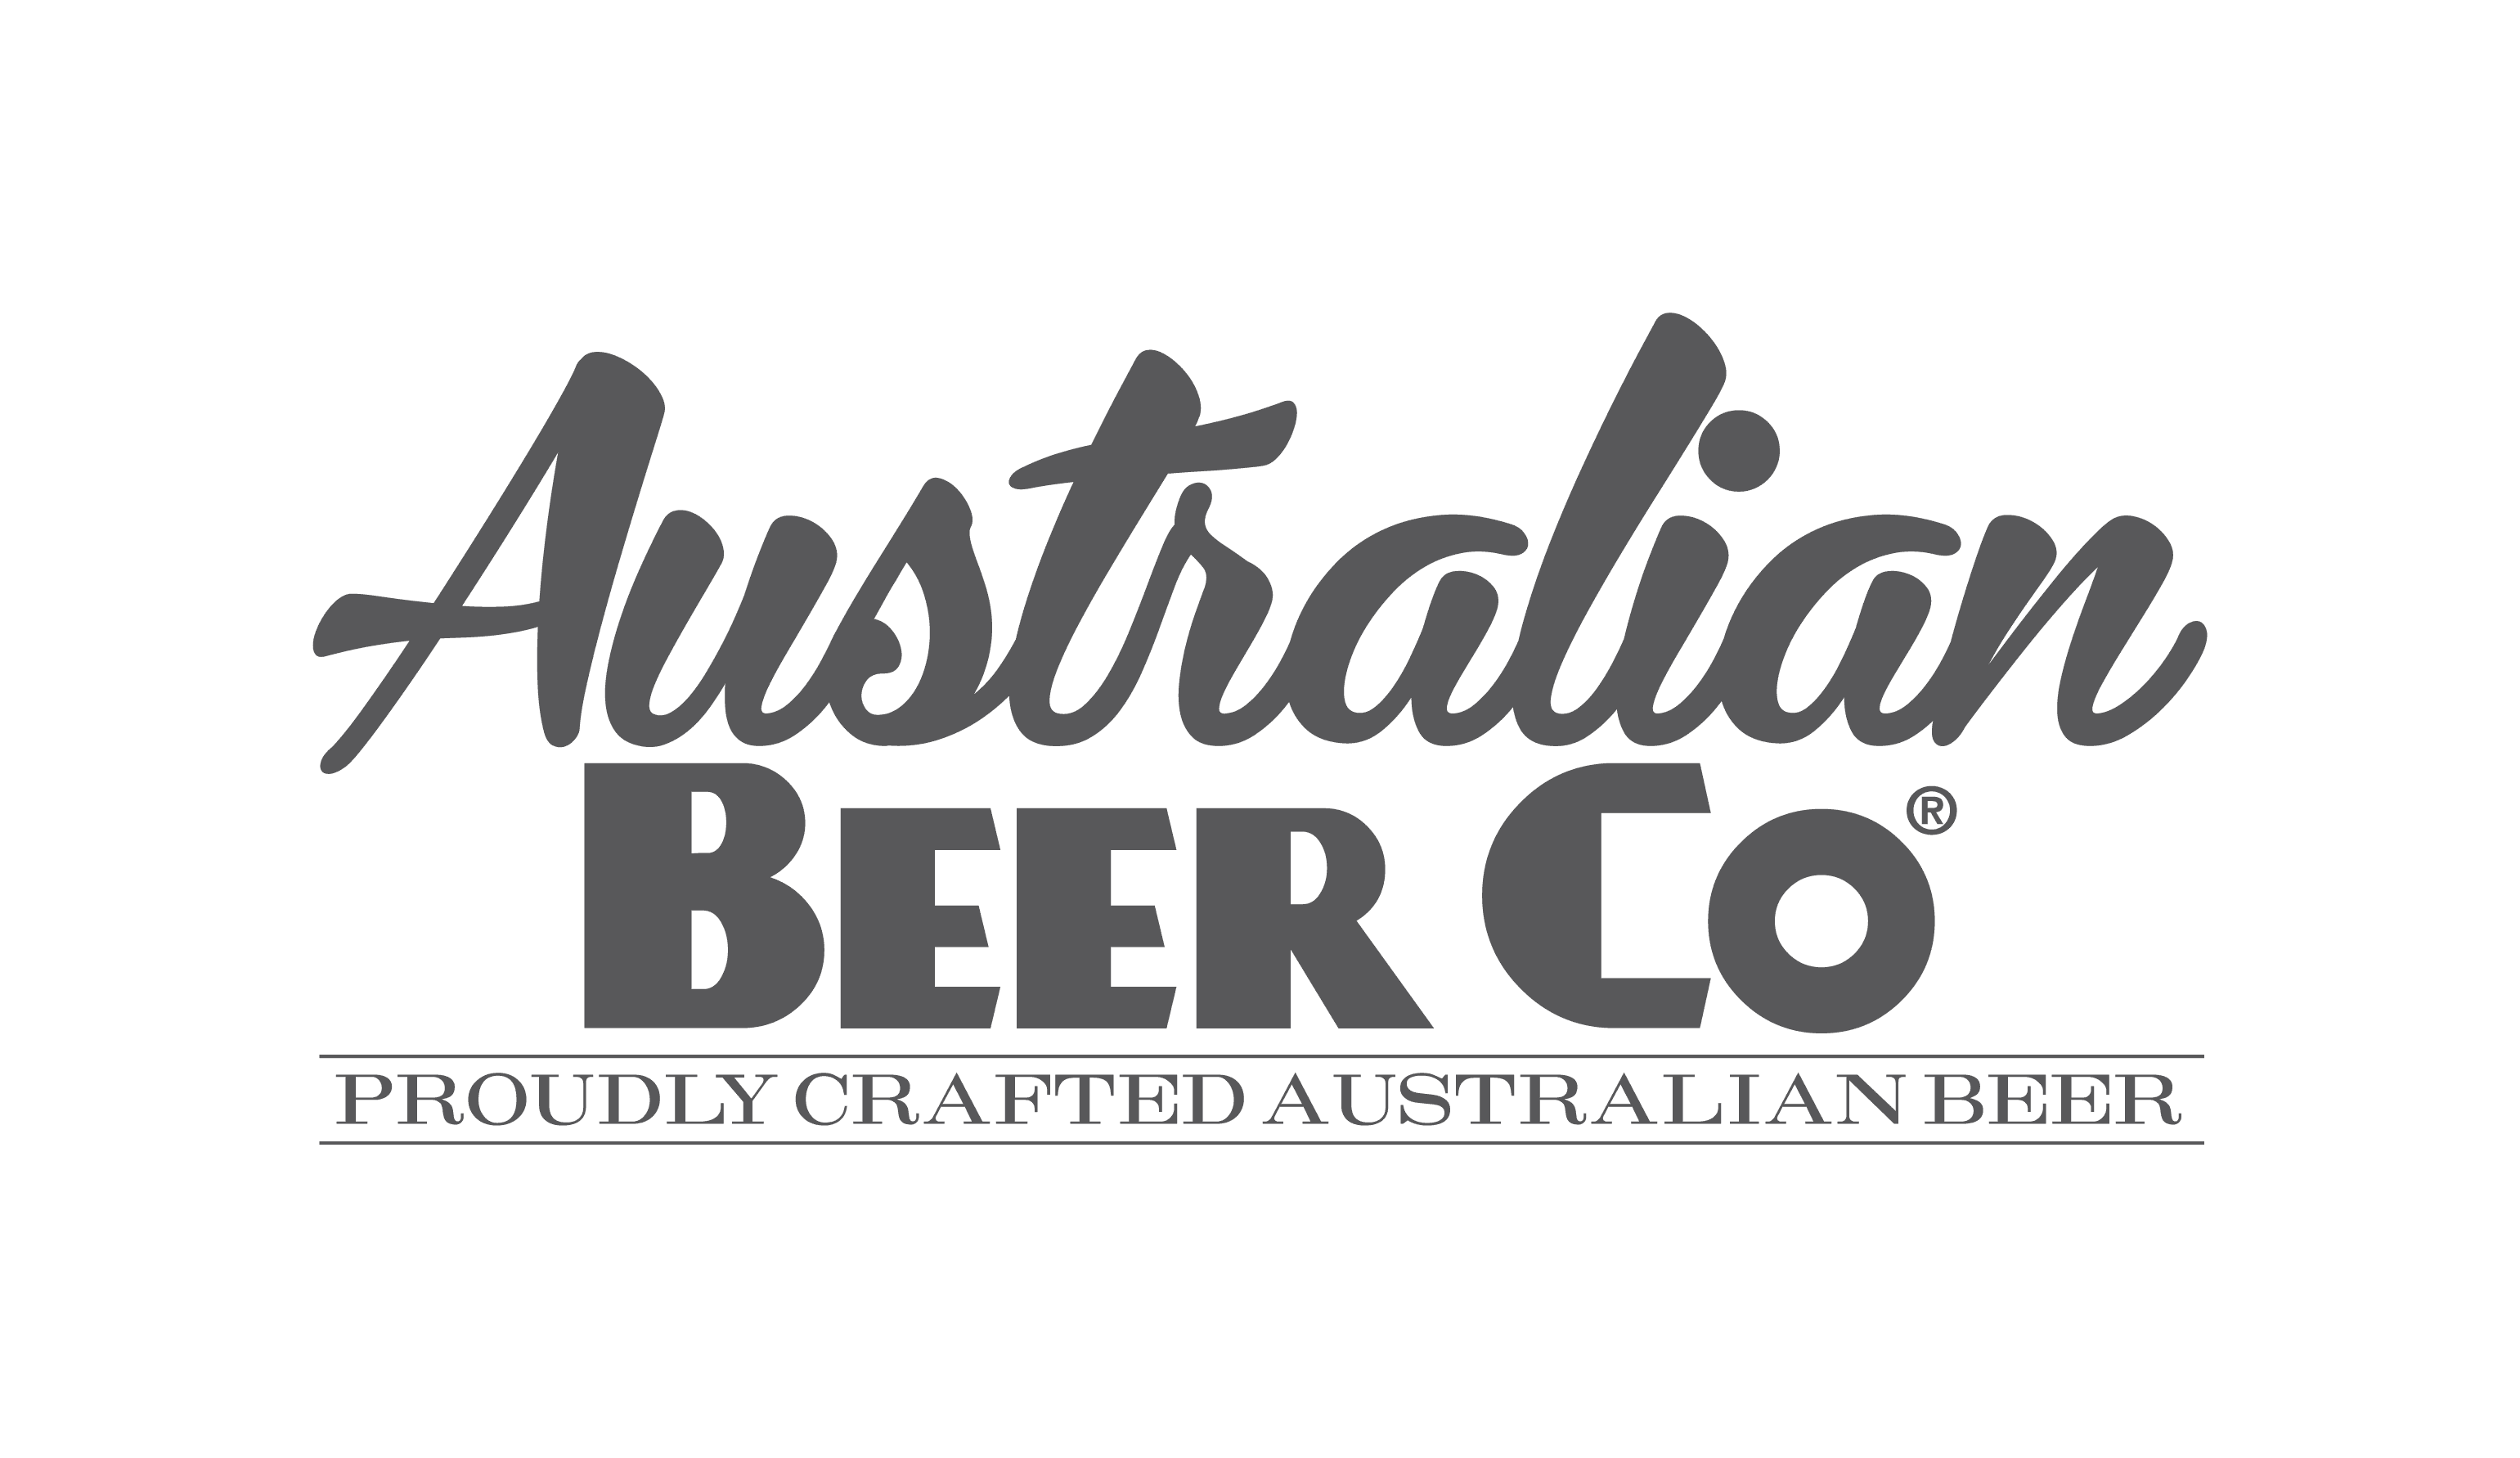 Australian Beer Co